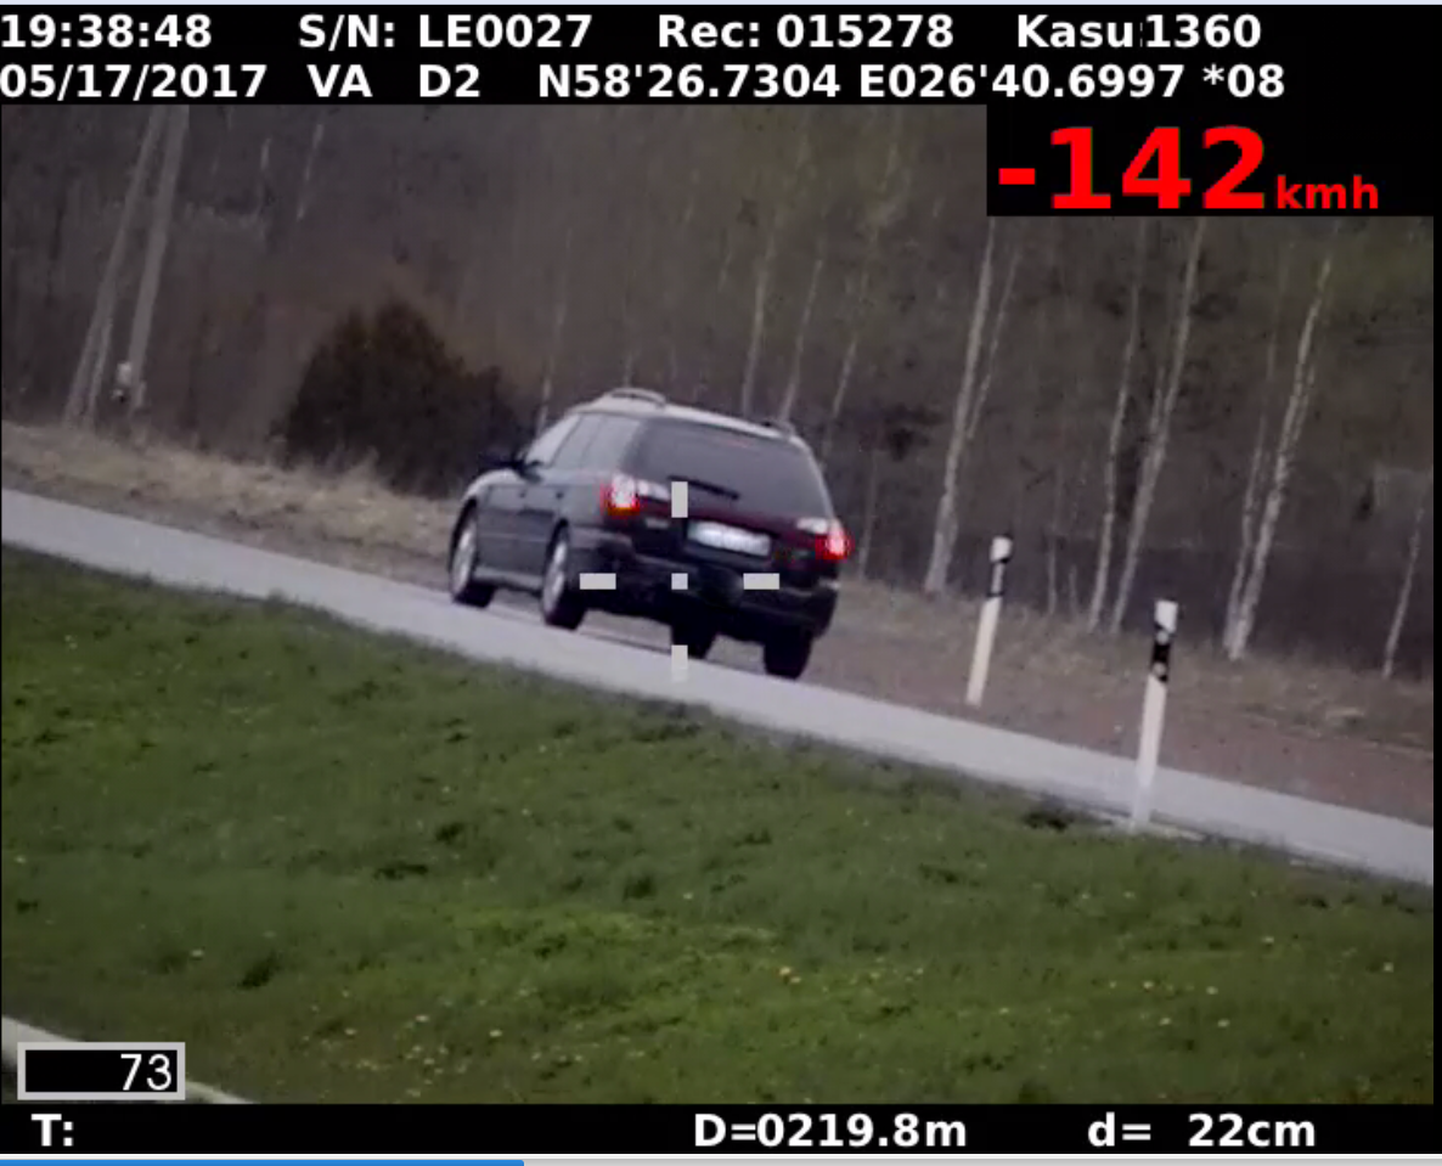 Möödunud nädalak märkas politsei Tartu vallas suurel kiirusel liikumas sõiduautot Subaru, mille kiiruseks fikseeriti 142 km/h.